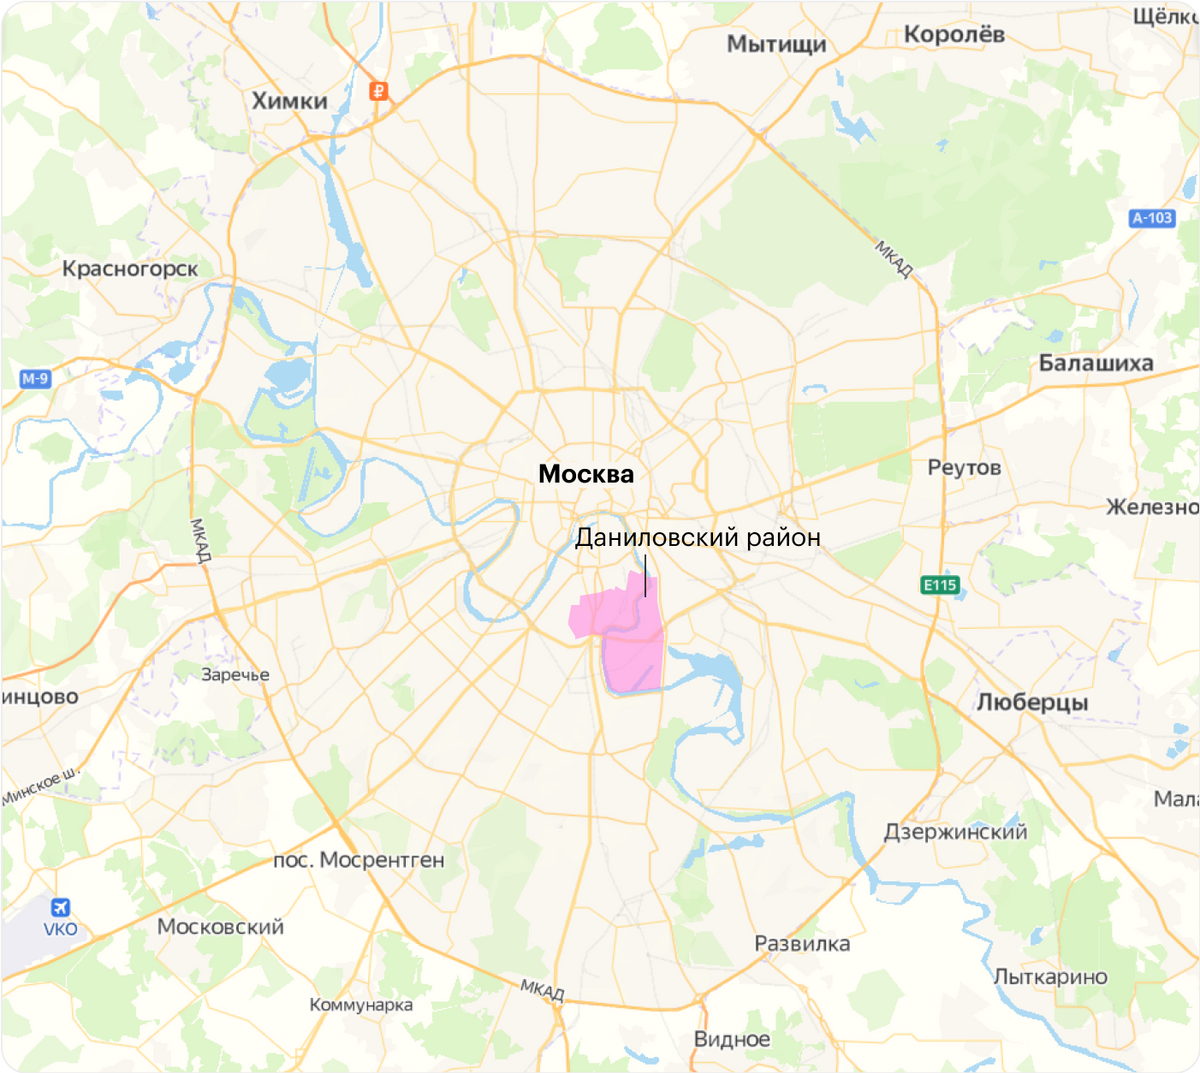 Даниловский район — это почти центр Москвы. Источник: «Яндекс-карты»